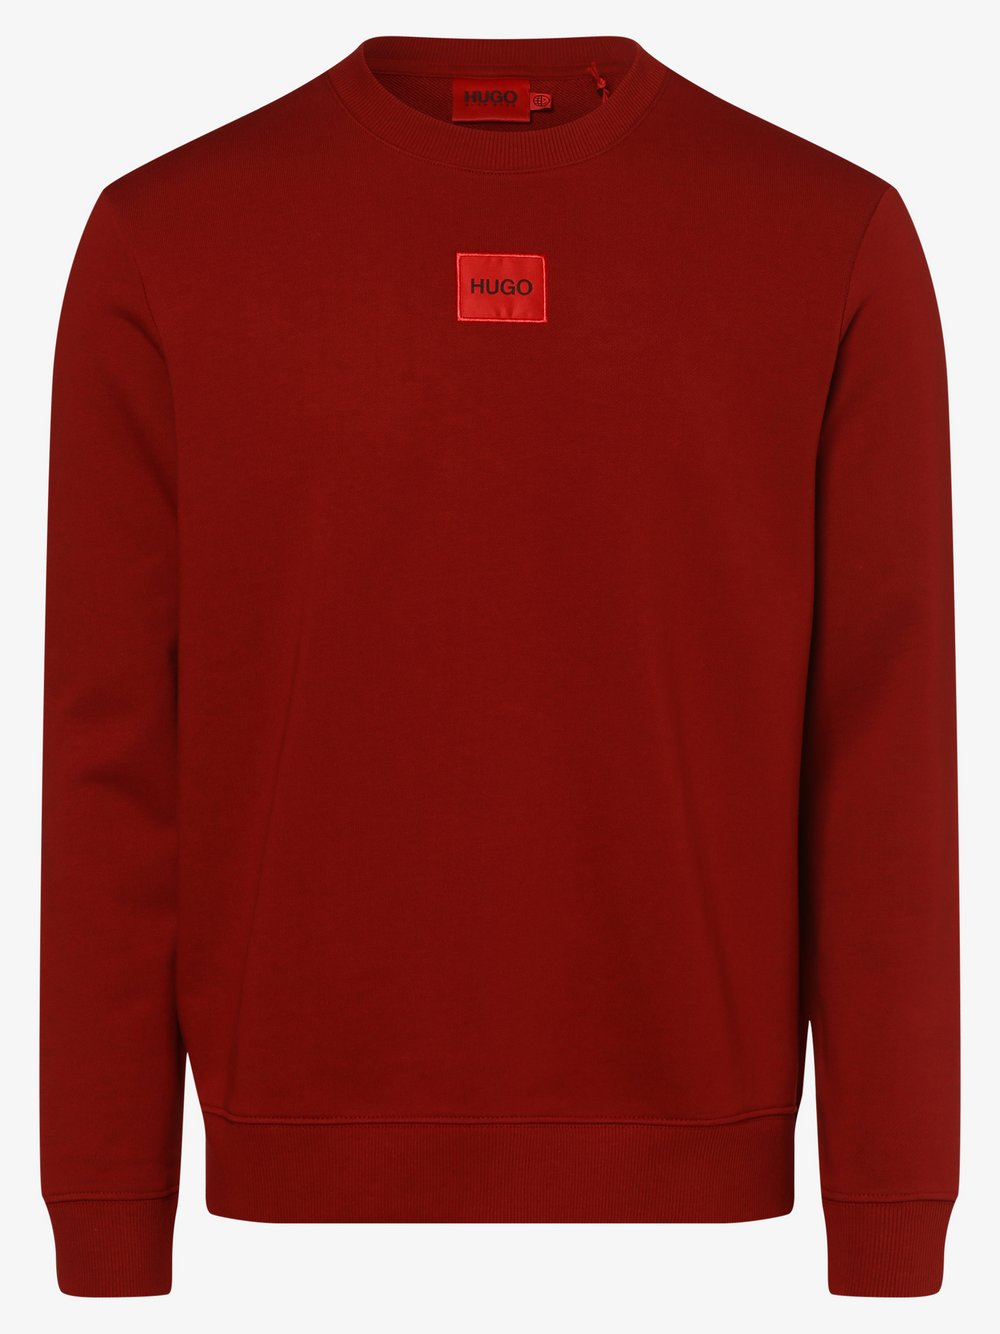 HUGO - Męska bluza nierozpinana – Diragol212, czerwony